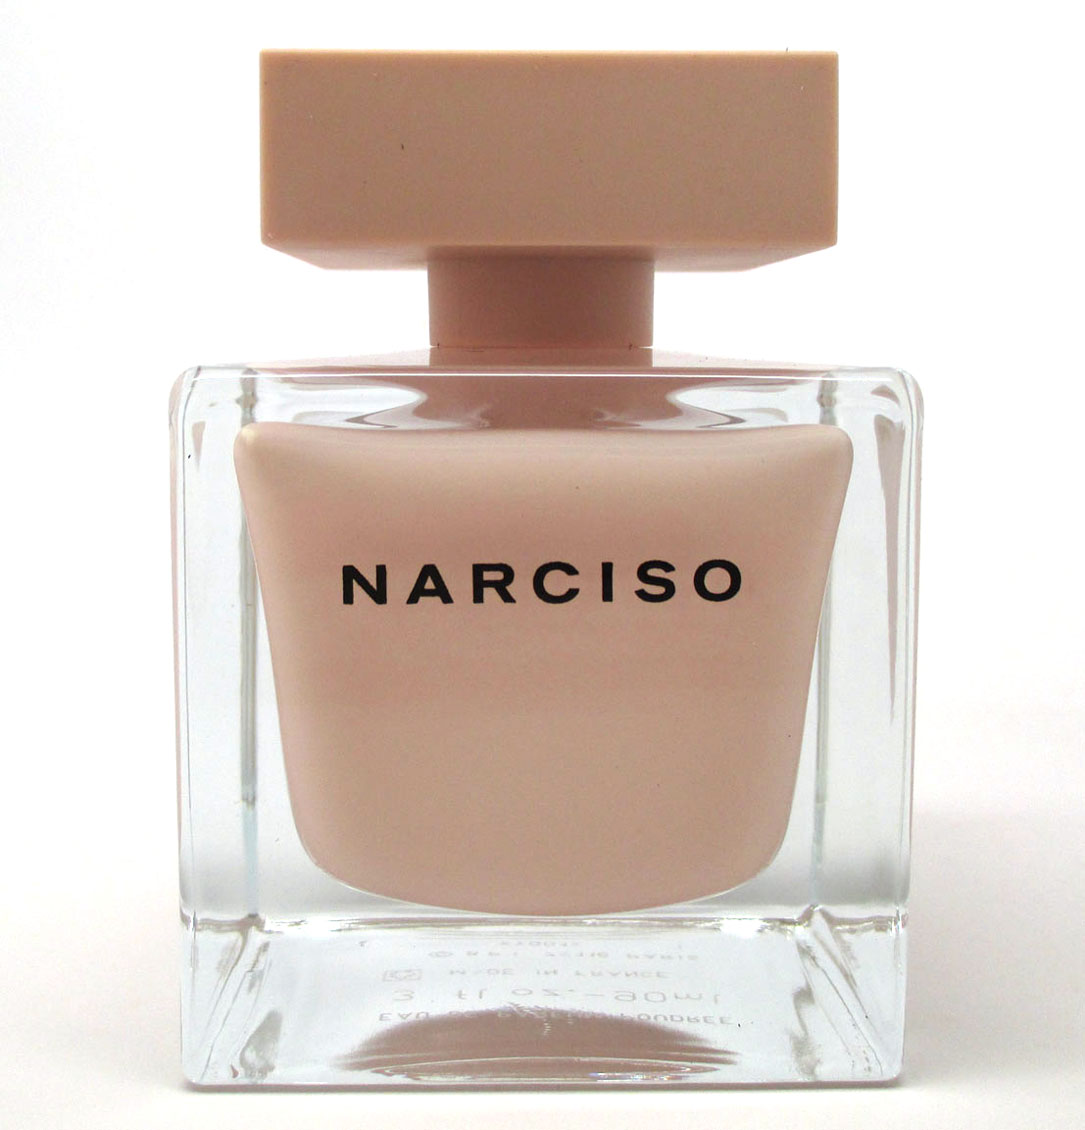 Narciso Eau De Parfum Poudree Review